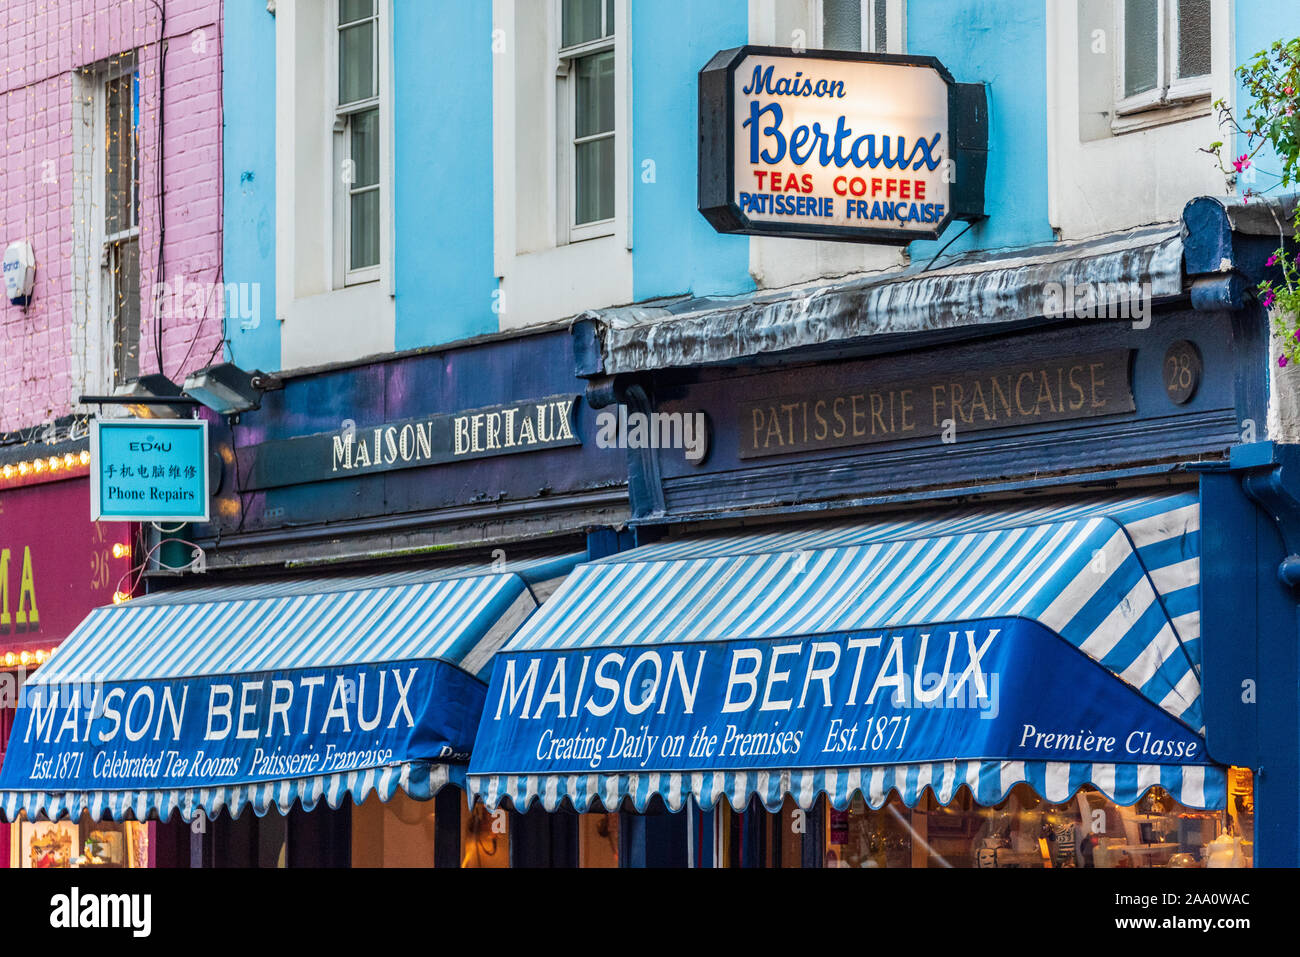 Maison Bertaux in der Griechischen Straße Soho, 1871 gegründet von einem Monsieur Bertaux aus Paris, ist der älteste Pâtisserie shop in London. Soho, Soho Wohn Stockfoto